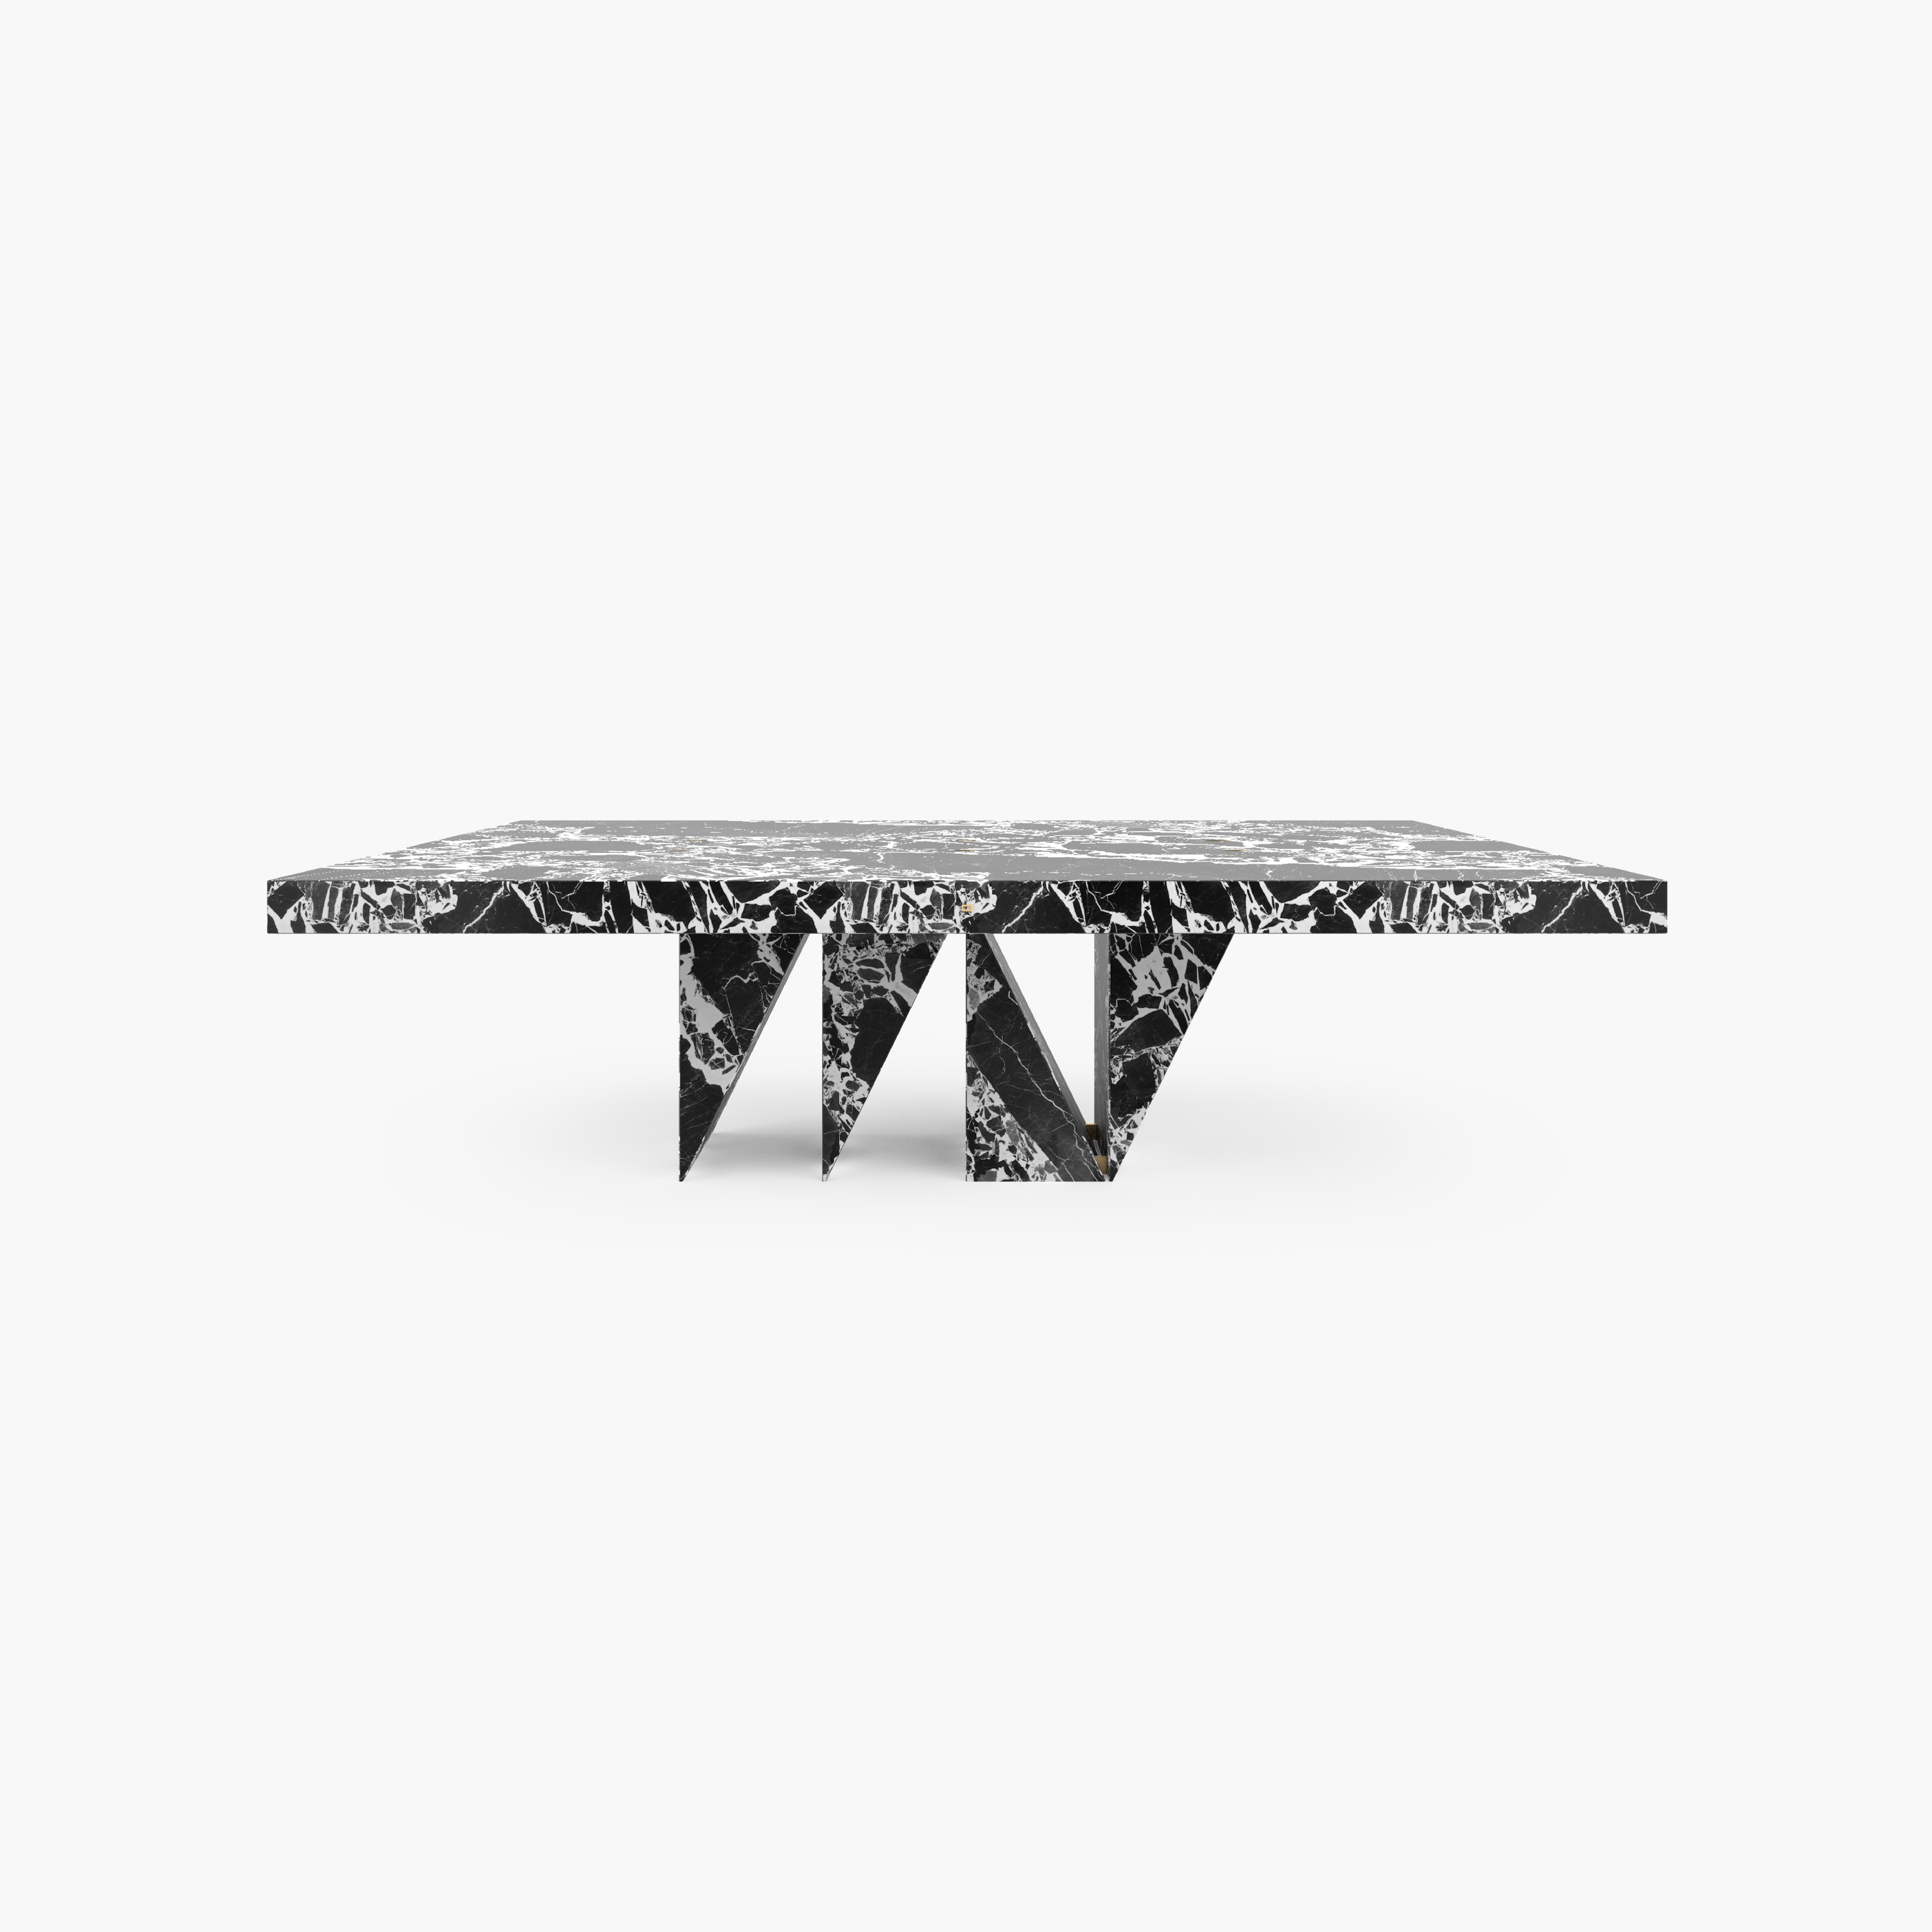 Table à manger
par Felix SCHWAKE

FS 174-b
CM L260  B142 H78
IN L102,36  B55,91 H30,71
Marbre Grand Antique, noir - blanc

2023

Dimensions et surfaces individuelles sur demande

Sculpture d'art fonctionnelle.
Une pièce unique en son genre.